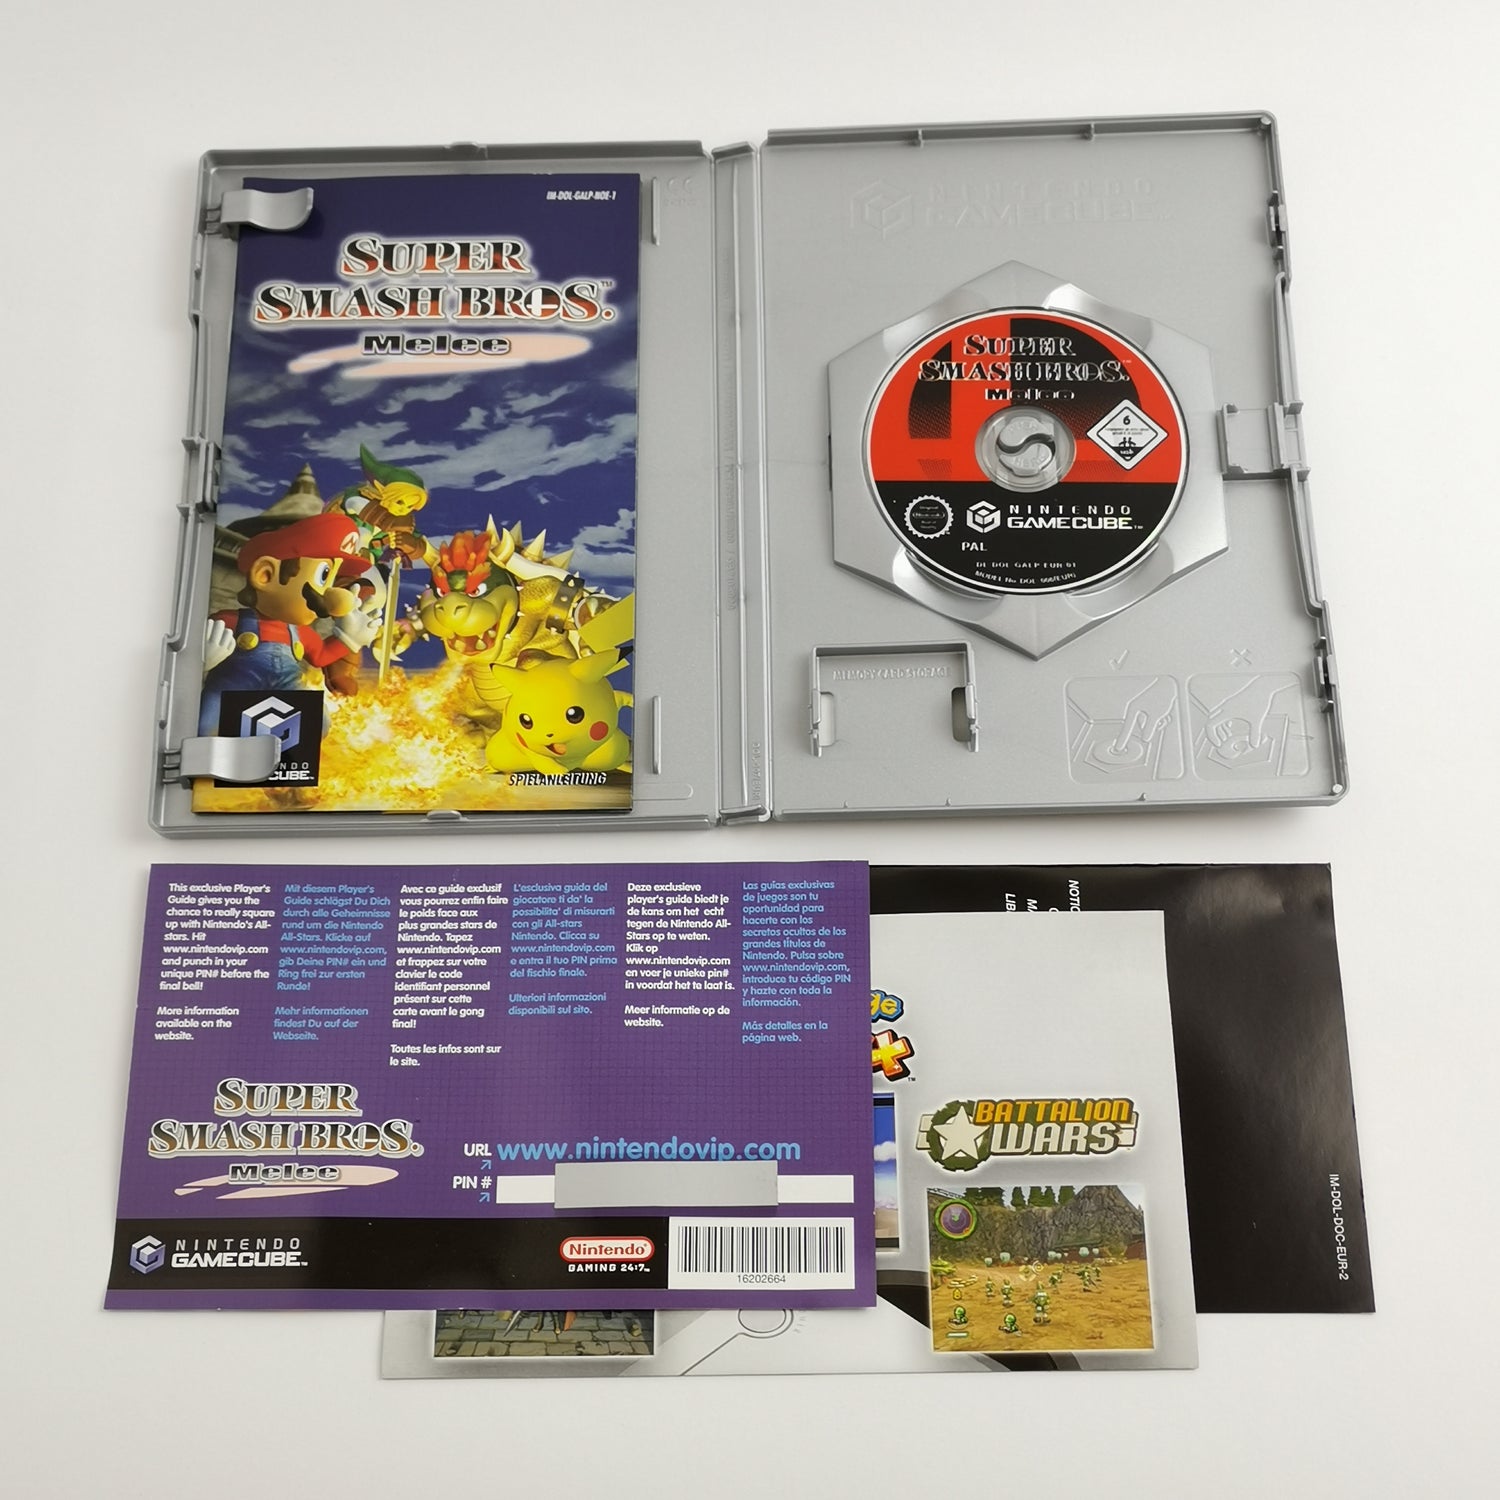 Nintendo Gamecube Games: Super Smash Bros. Melee & Mario Party 5 - OVP GC PAL